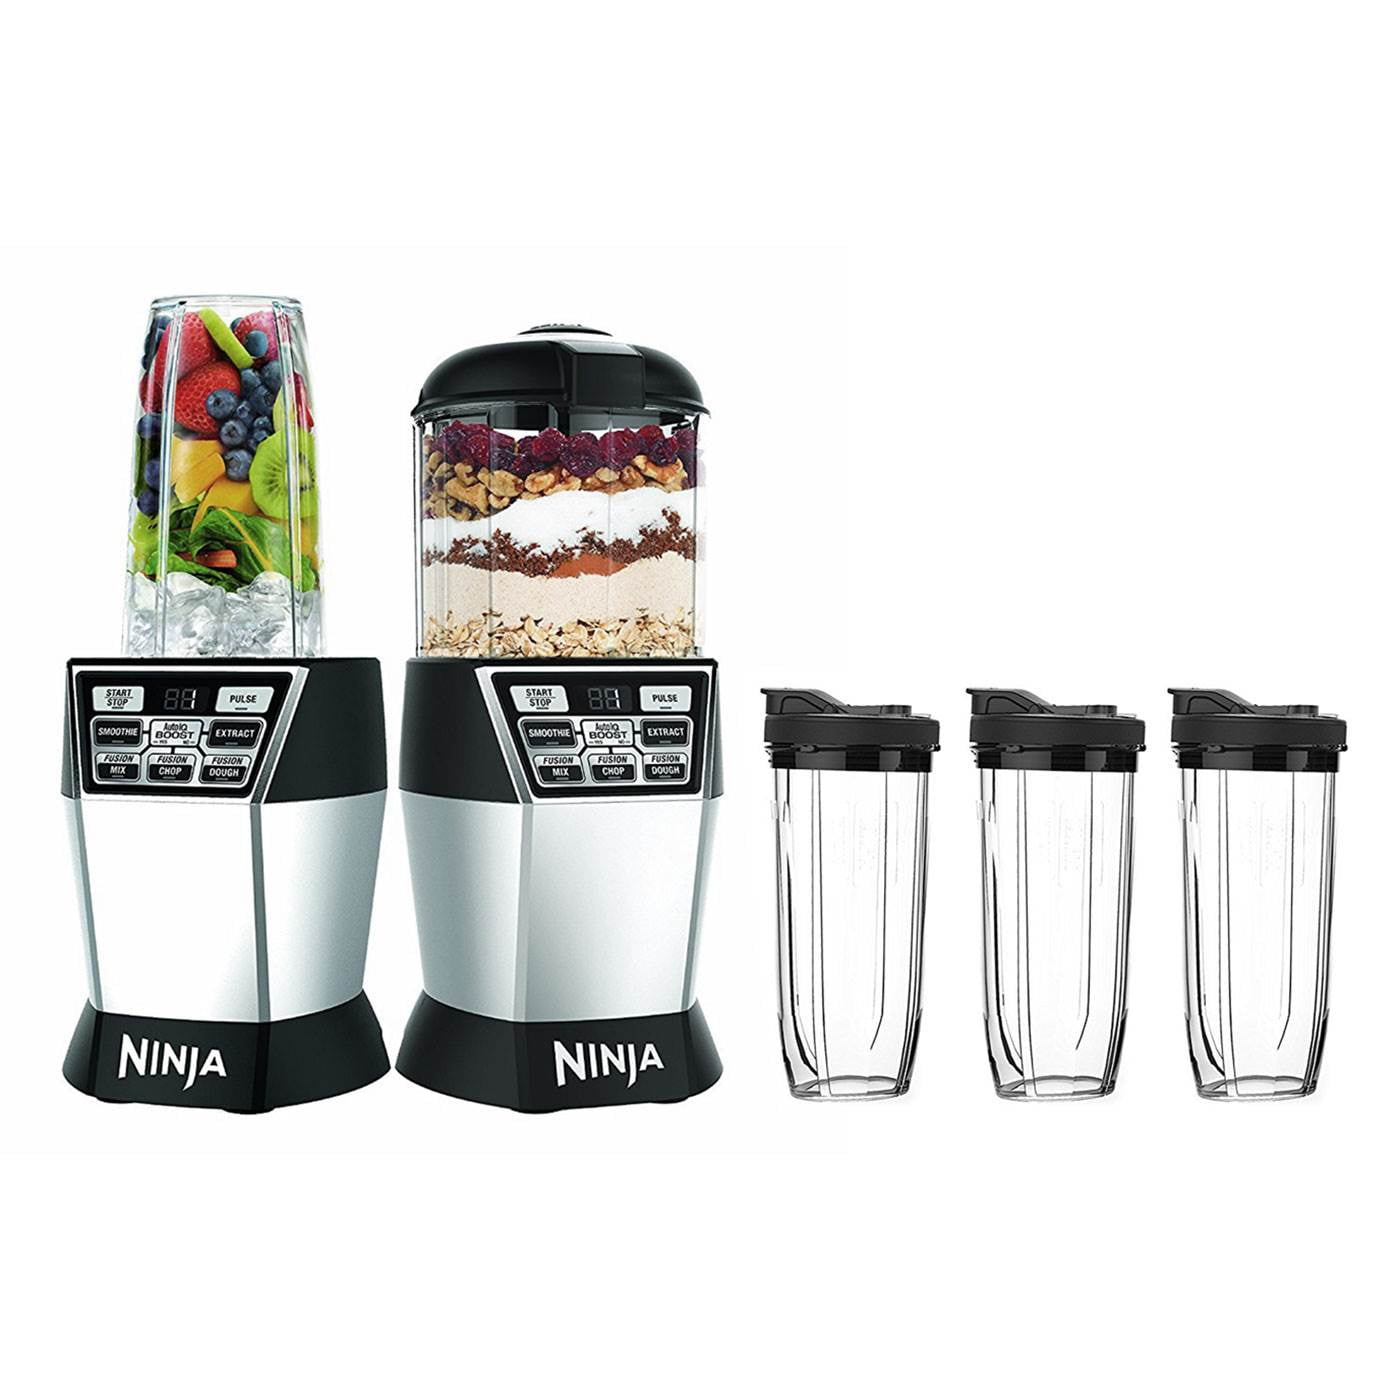 18 oz. Tritan™ Nutri Ninja® Cup Blenders & Kitchen Systems - Ninja